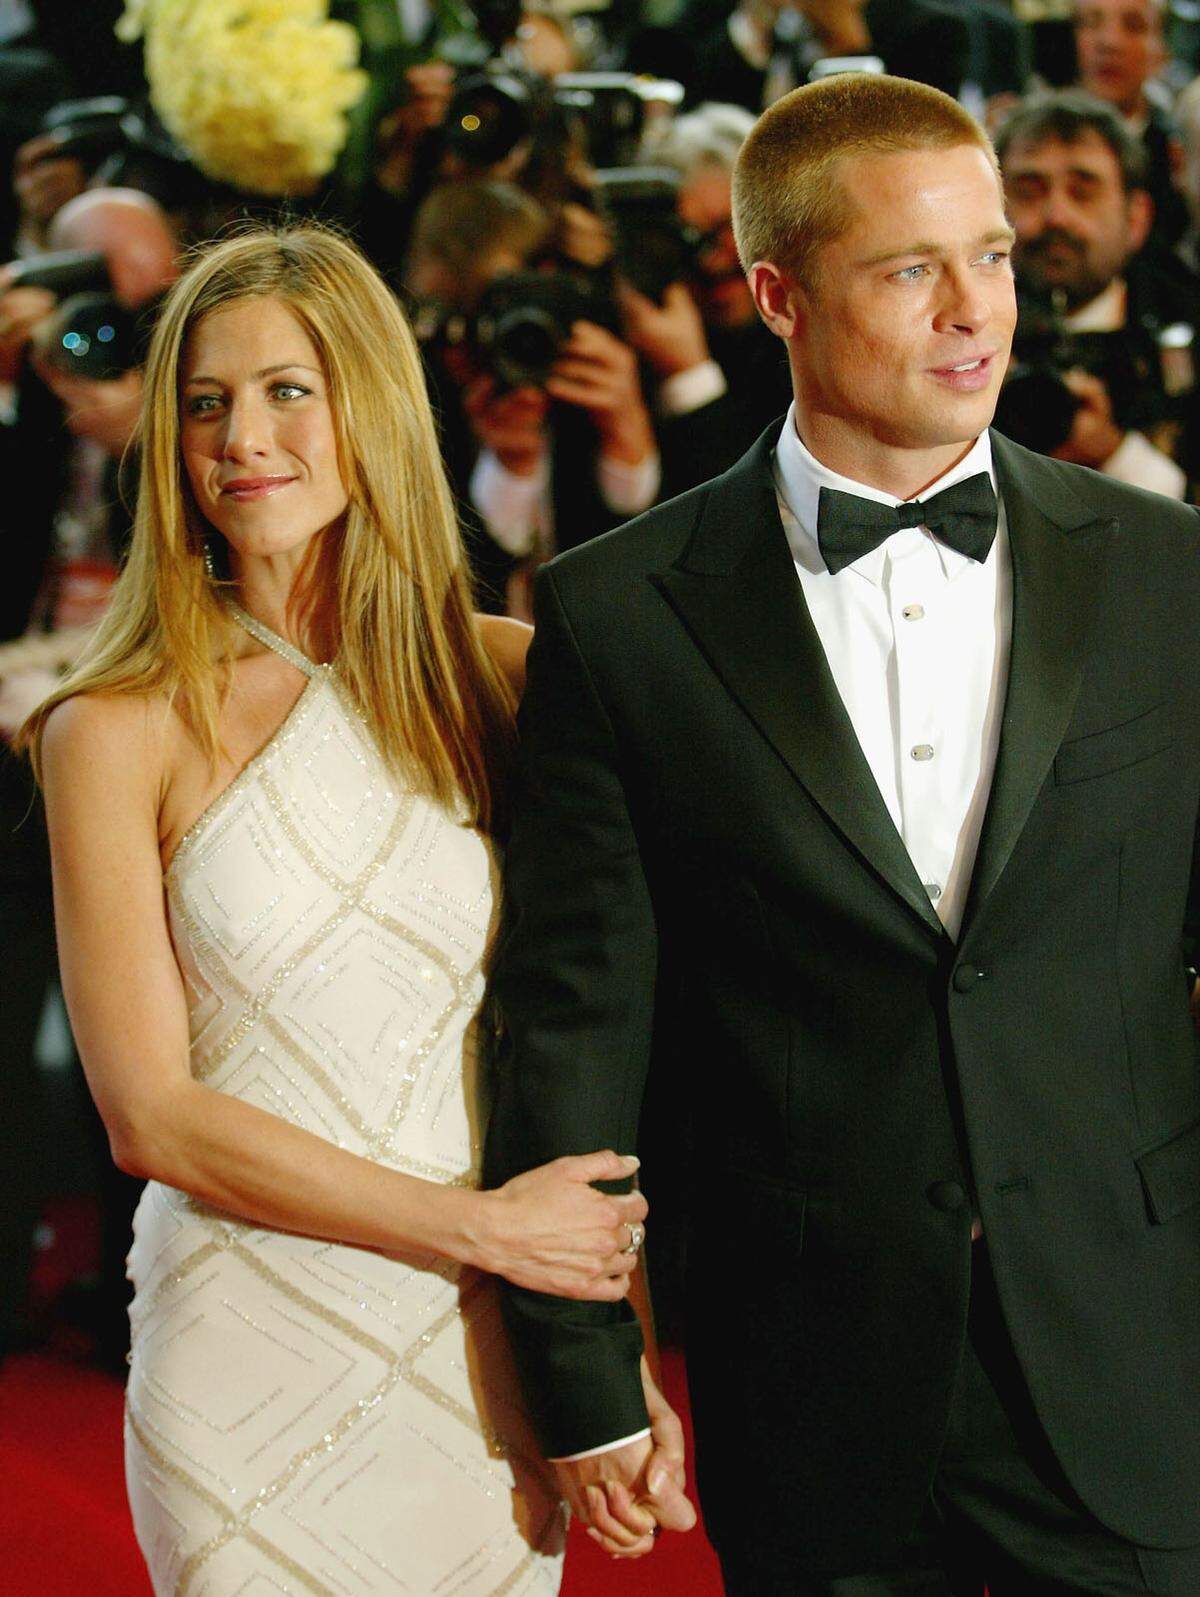 Als "Friends"-Star gab Aniston im Jahr 2000 in Malibu Brad Pitt das Ja-Wort, doch die Ehe von "Hollywoods Traumpaar" ging fünf Jahre später in die Brüche. Zu diesem Zeitpunkt hatte Pitt bereits seine spätere Frau Angelina Jolie bei Dreharbeiten kennengelernt. Die Trennung der Beiden im Jahr 2016 schlug ebenfalls hohe Wellen.